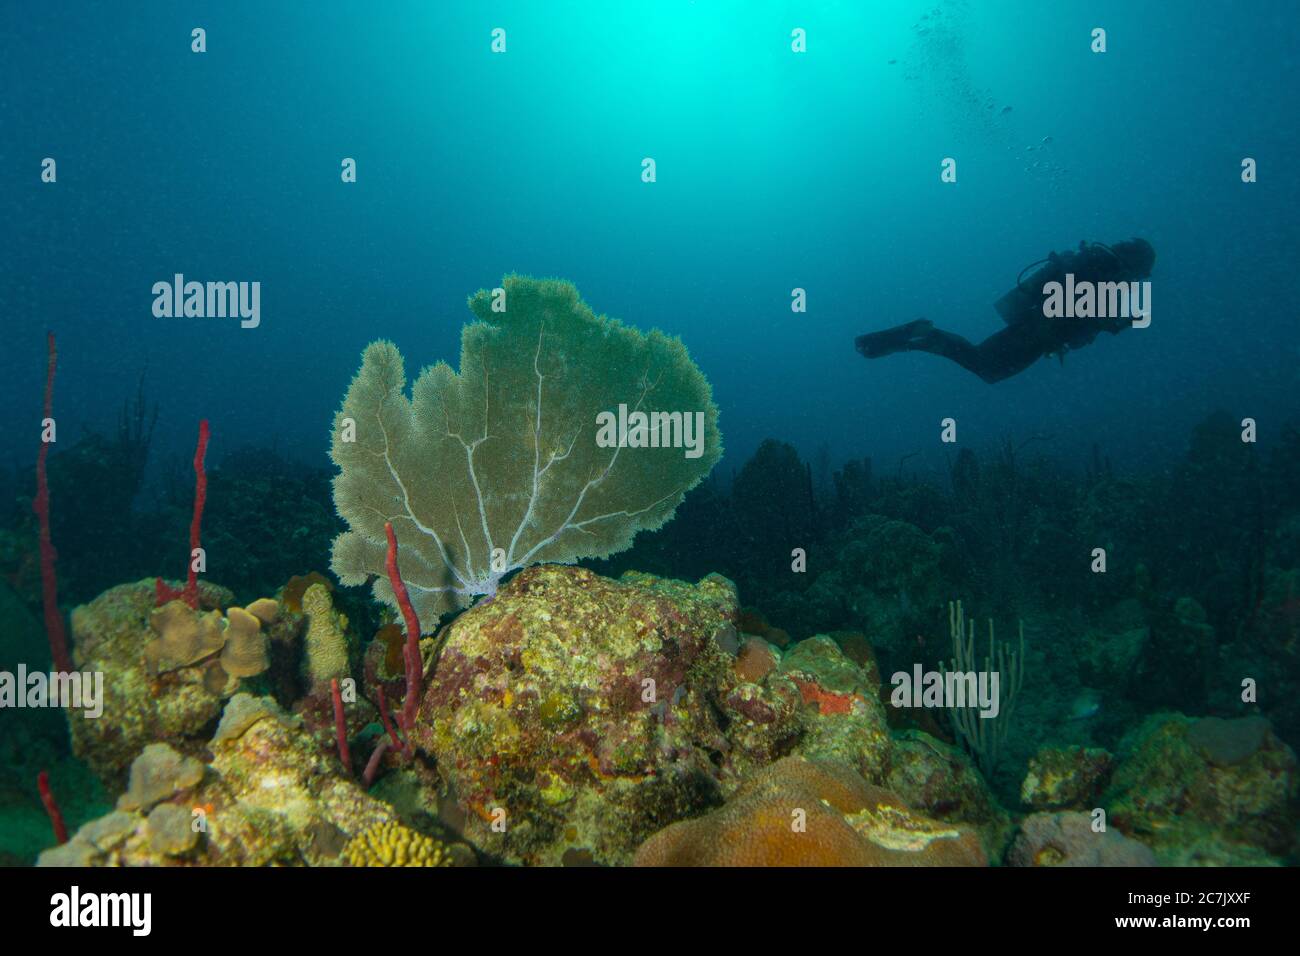 Bunte Korallen, Schwämme und Meeresfans im karibischen Meer mit Taucher in Sonnenlicht im blauen Ozean Stockfoto